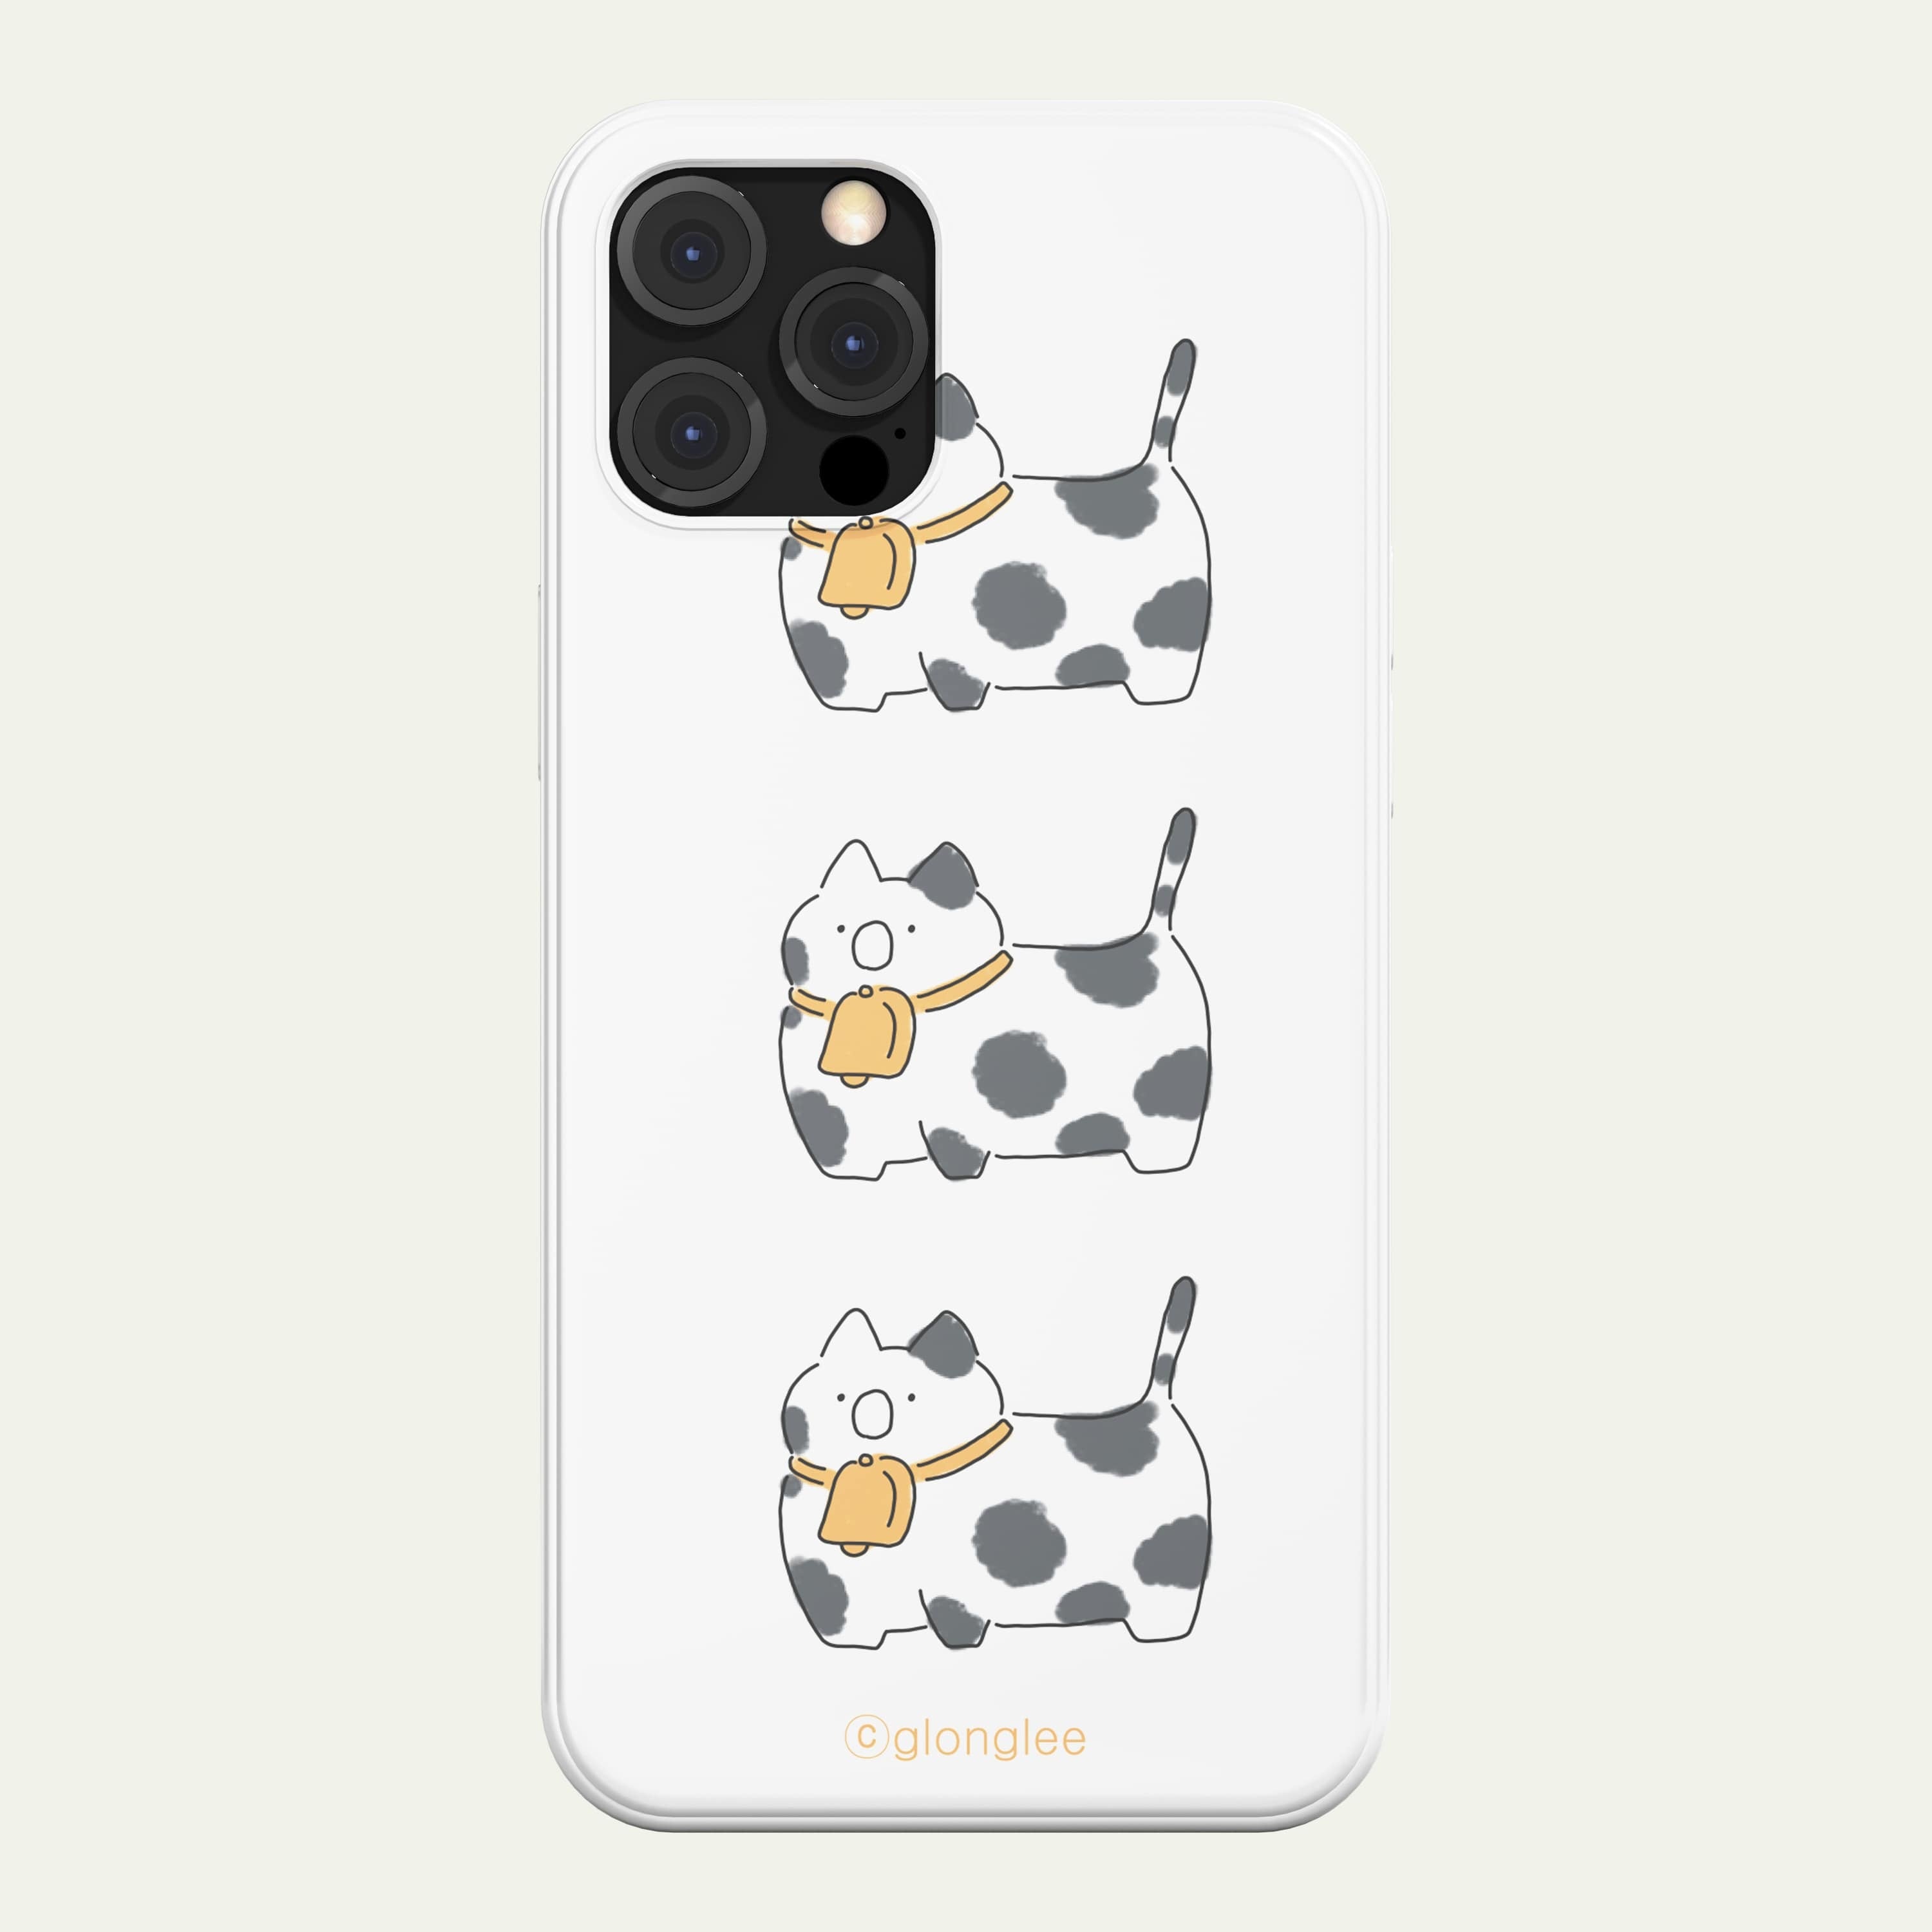 スマホケース [JiRUNGiNE] かわいい ネコ ゆるキャラ イラスト キャラクター 韓国 デザイナーズ iPhone Android 携帯カバー ぬこ にゃんこ ぶち猫 牛 (JR03) アイフォン Xperia Galaxy